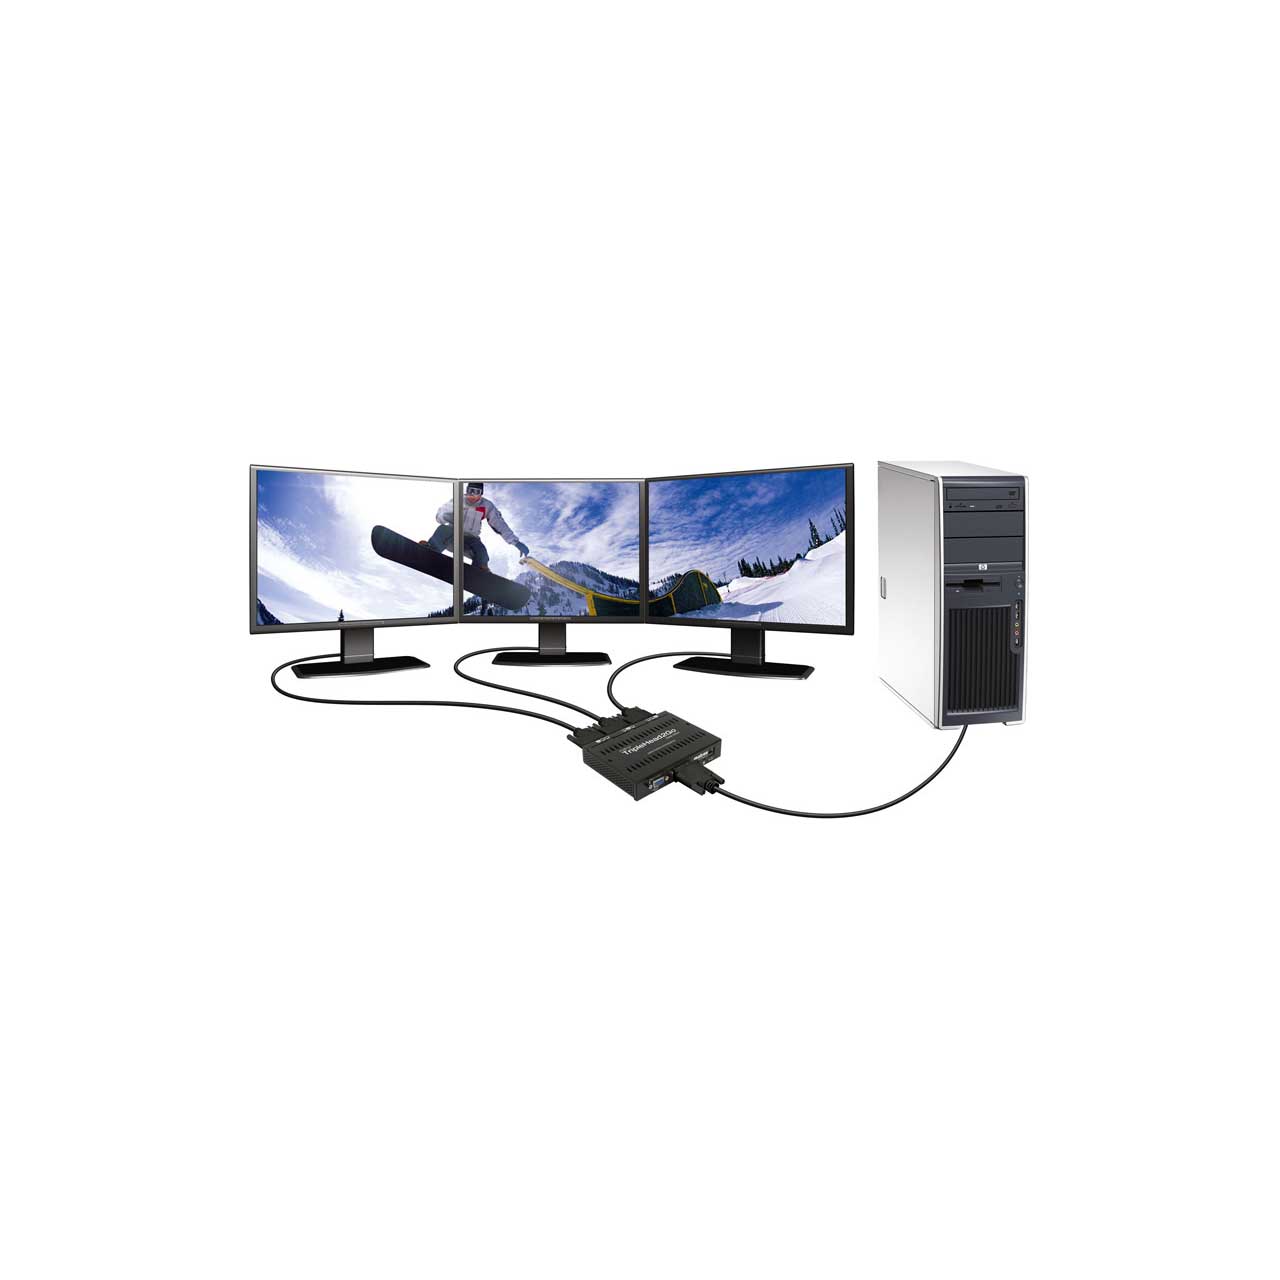 Matrox T2G-D3D-IF TripleHead2Go Digital Edition Multi-Display Adapter